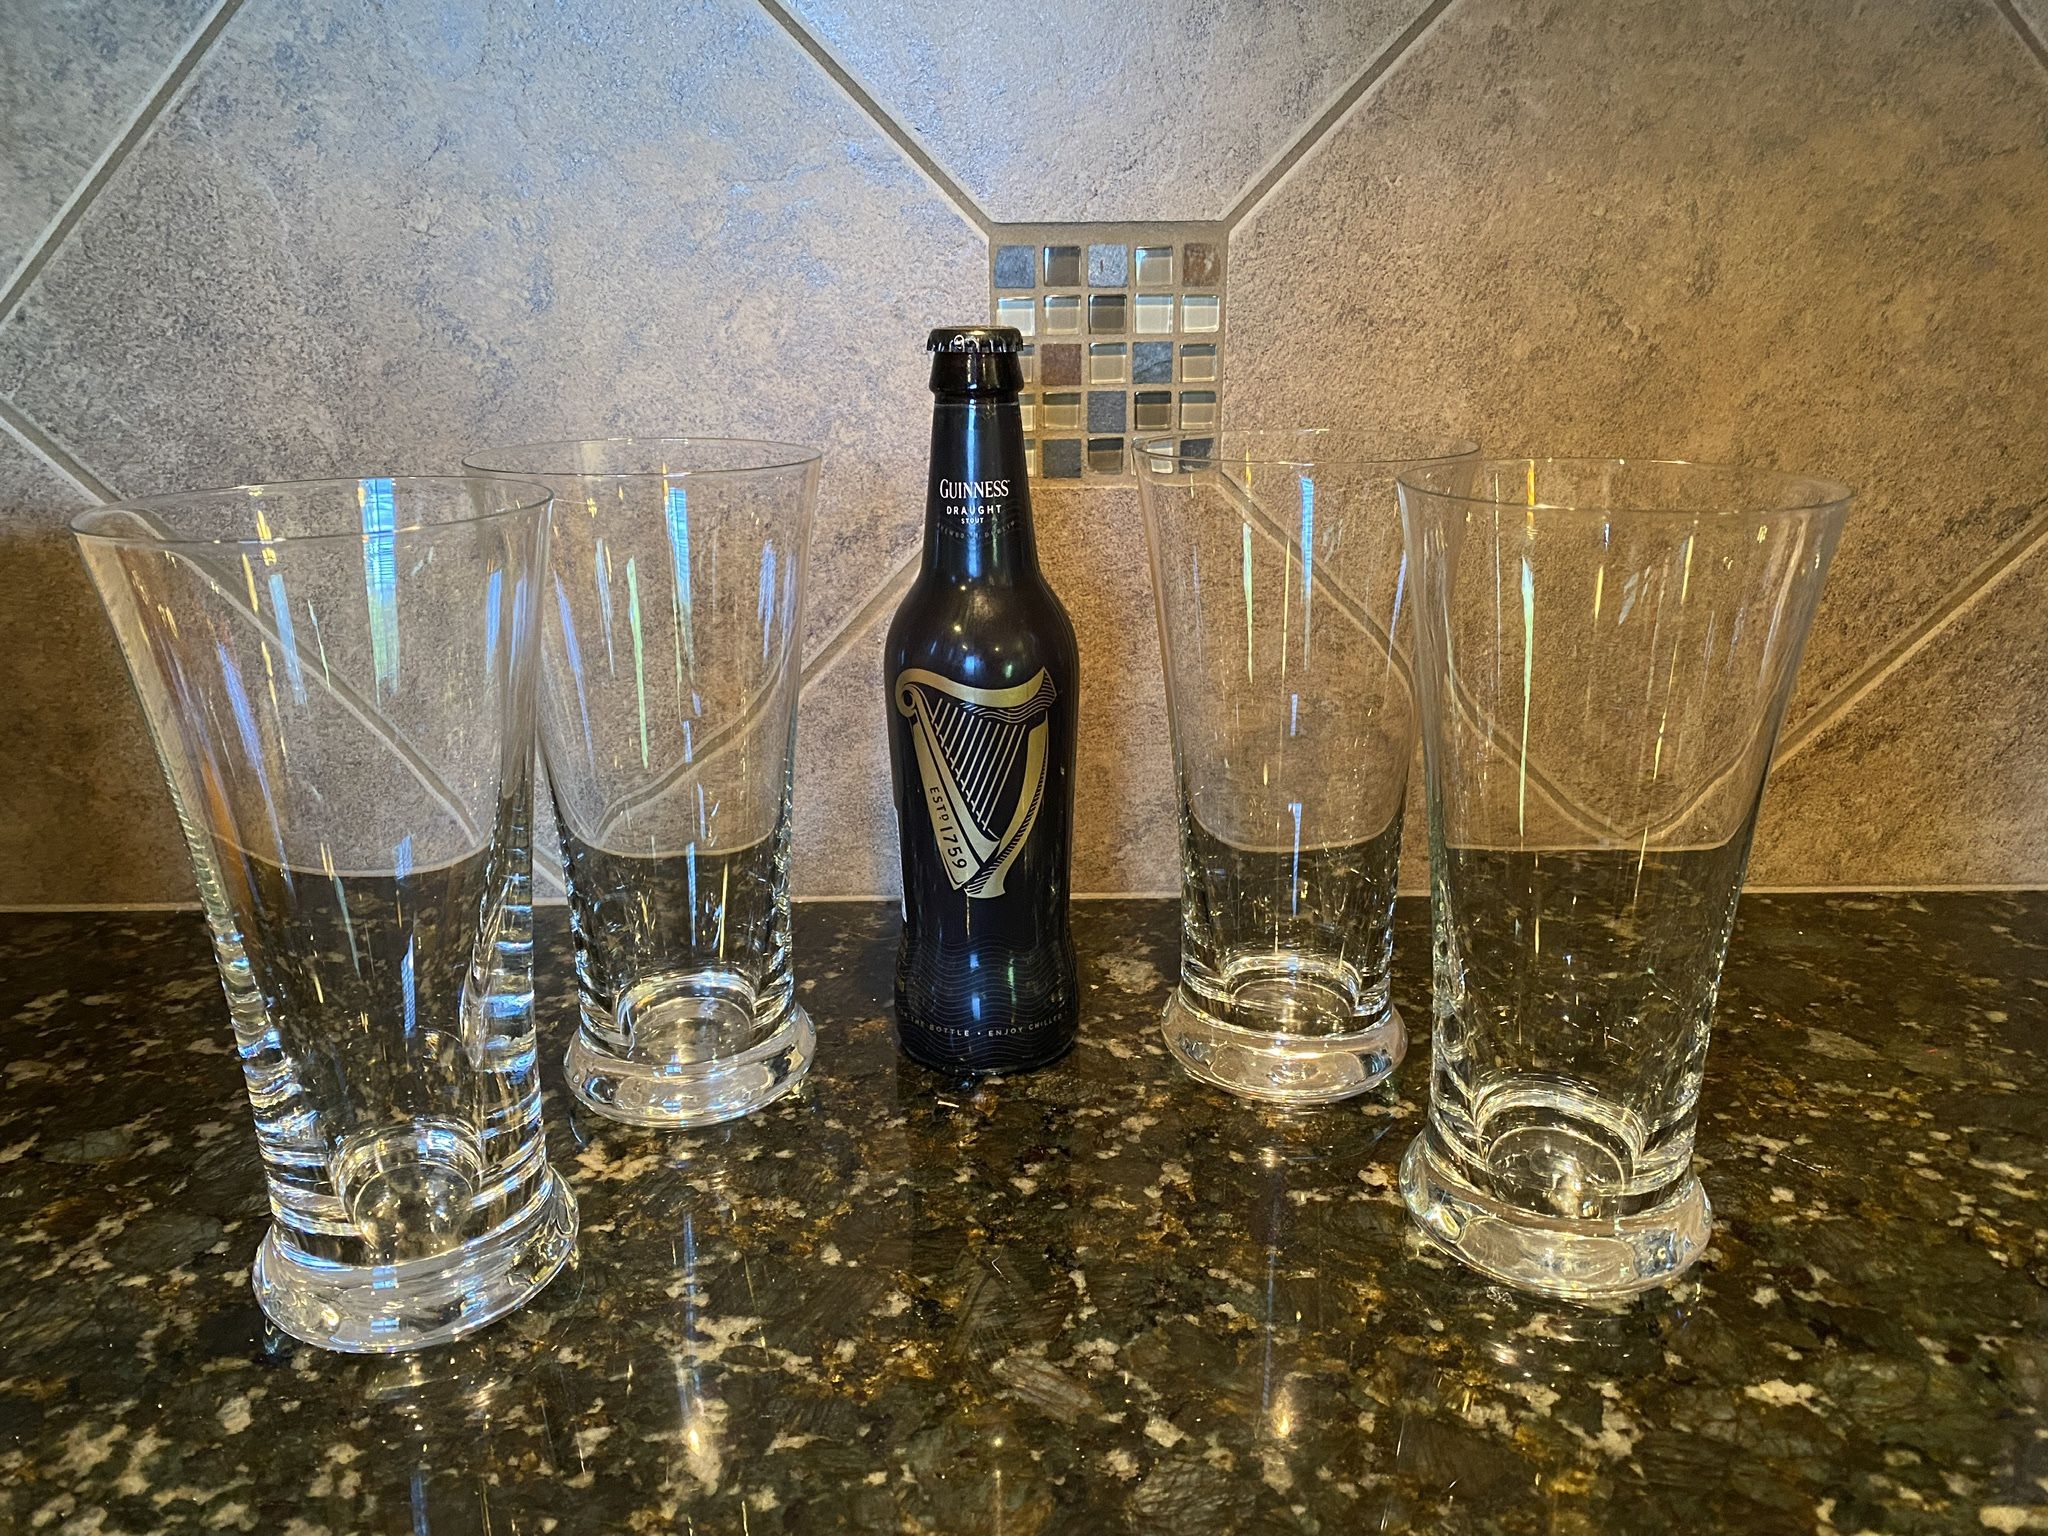 Large Beer Glasses  Or Flower Vases - Pilsner ale style